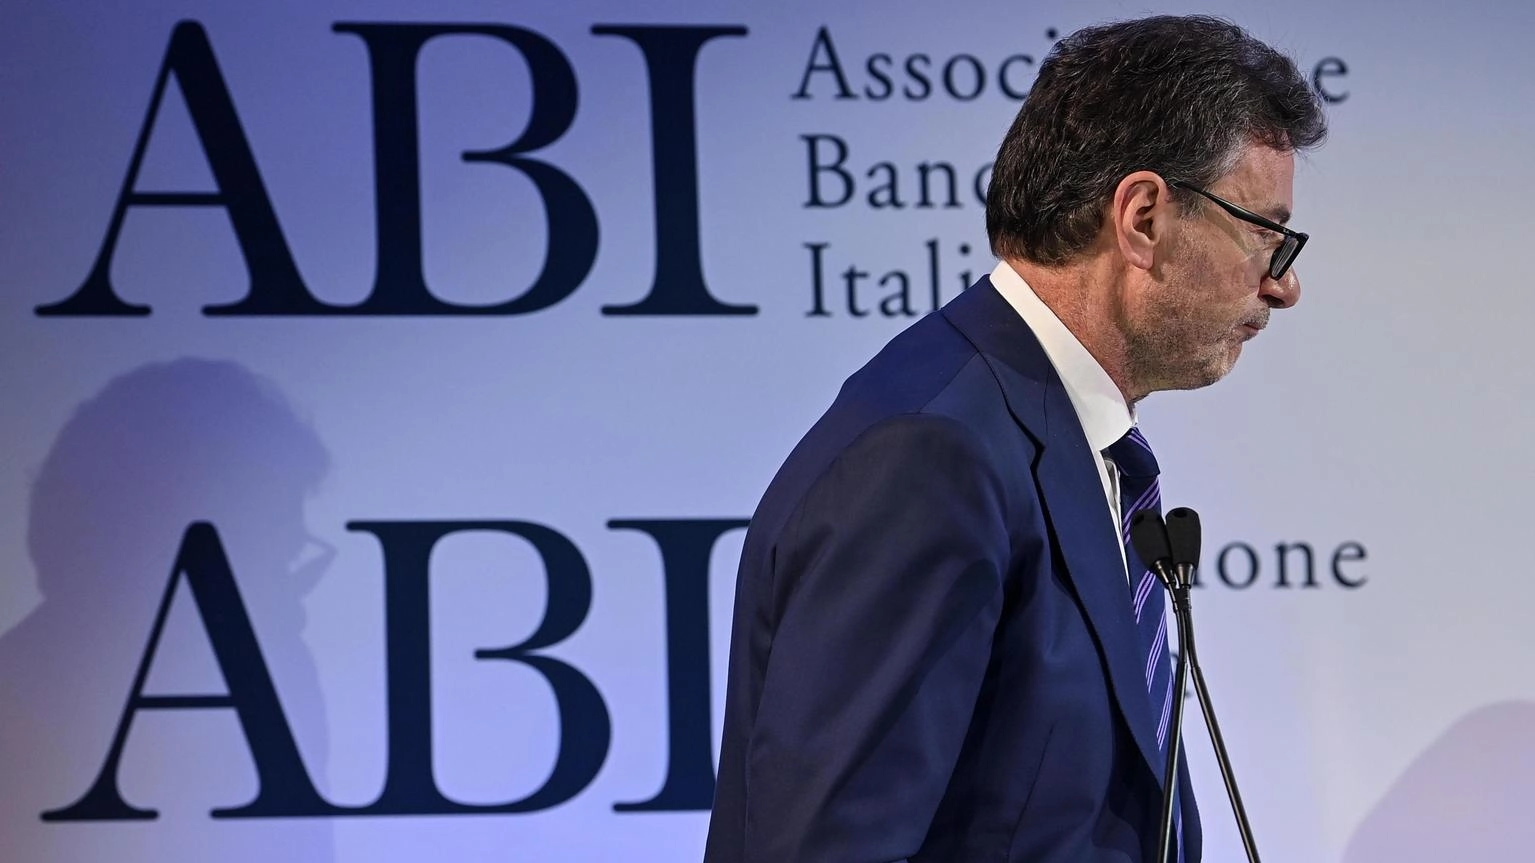 Analisti, tassa ad hoc negativa per le banche e l'Italia